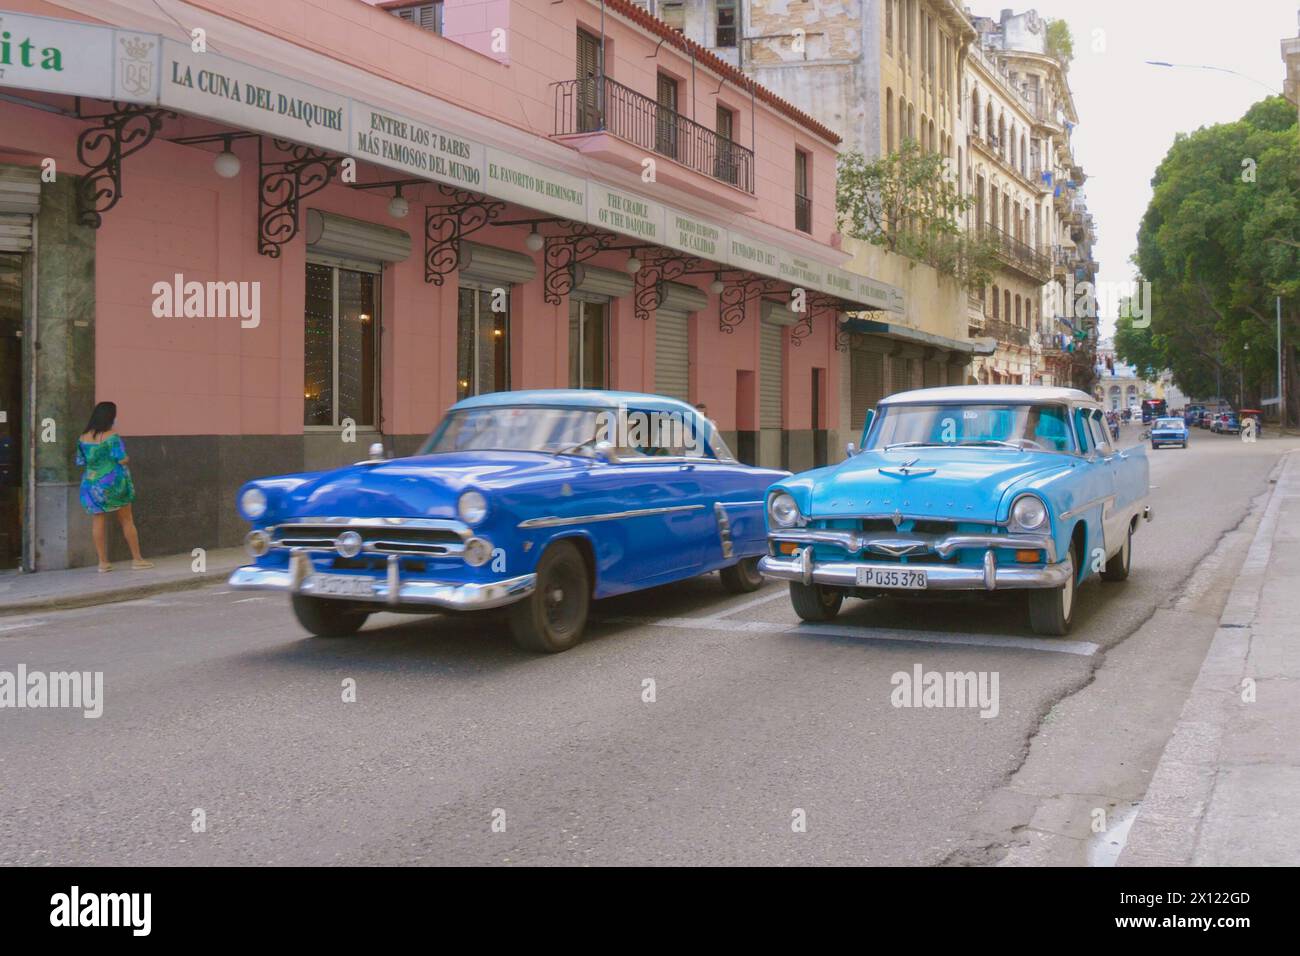 Havana, Cuba - 10 GENNAIO 2022 - Centro Habana, classiche auto americane anni '1950. Centro dell'Avana con auto d'epoca. Le colorate auto cubane d'epoca americane classiche del 1950 guidano sulla strada dell'Avana vecchia. Viaggi a Cuba Foto Stock